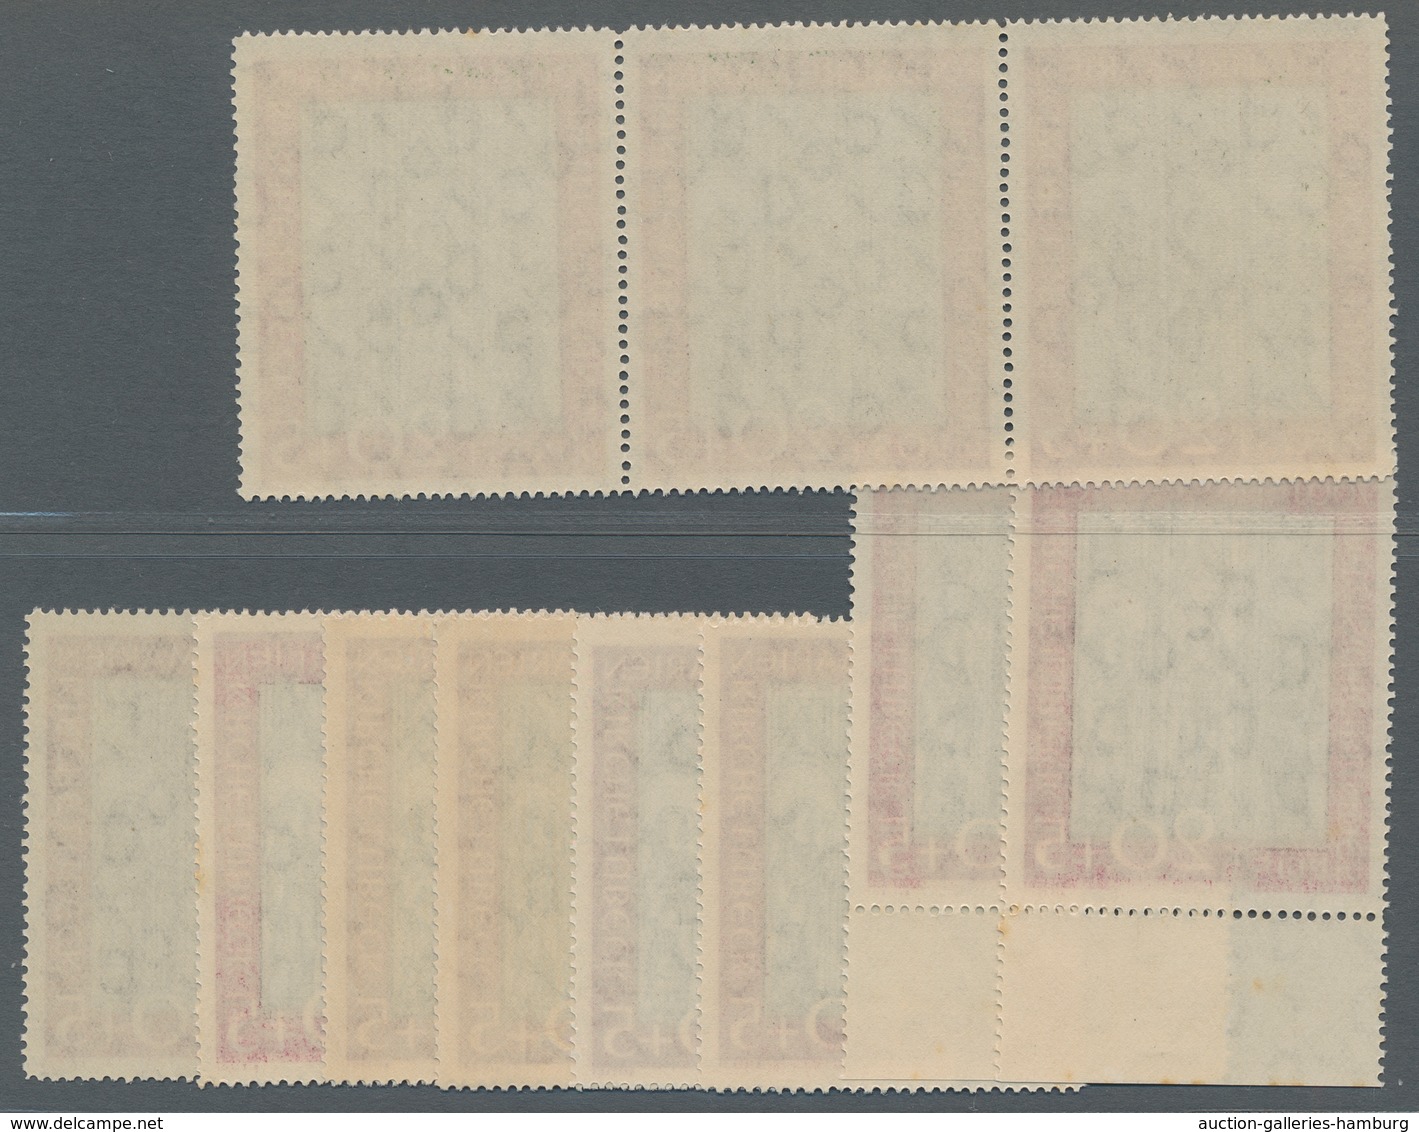 Bundesrepublik Deutschland: 1951, Marienkirche, 11 Postfrische Sätze, Sehr Schöne Erhaltung, Mit Dre - Covers & Documents